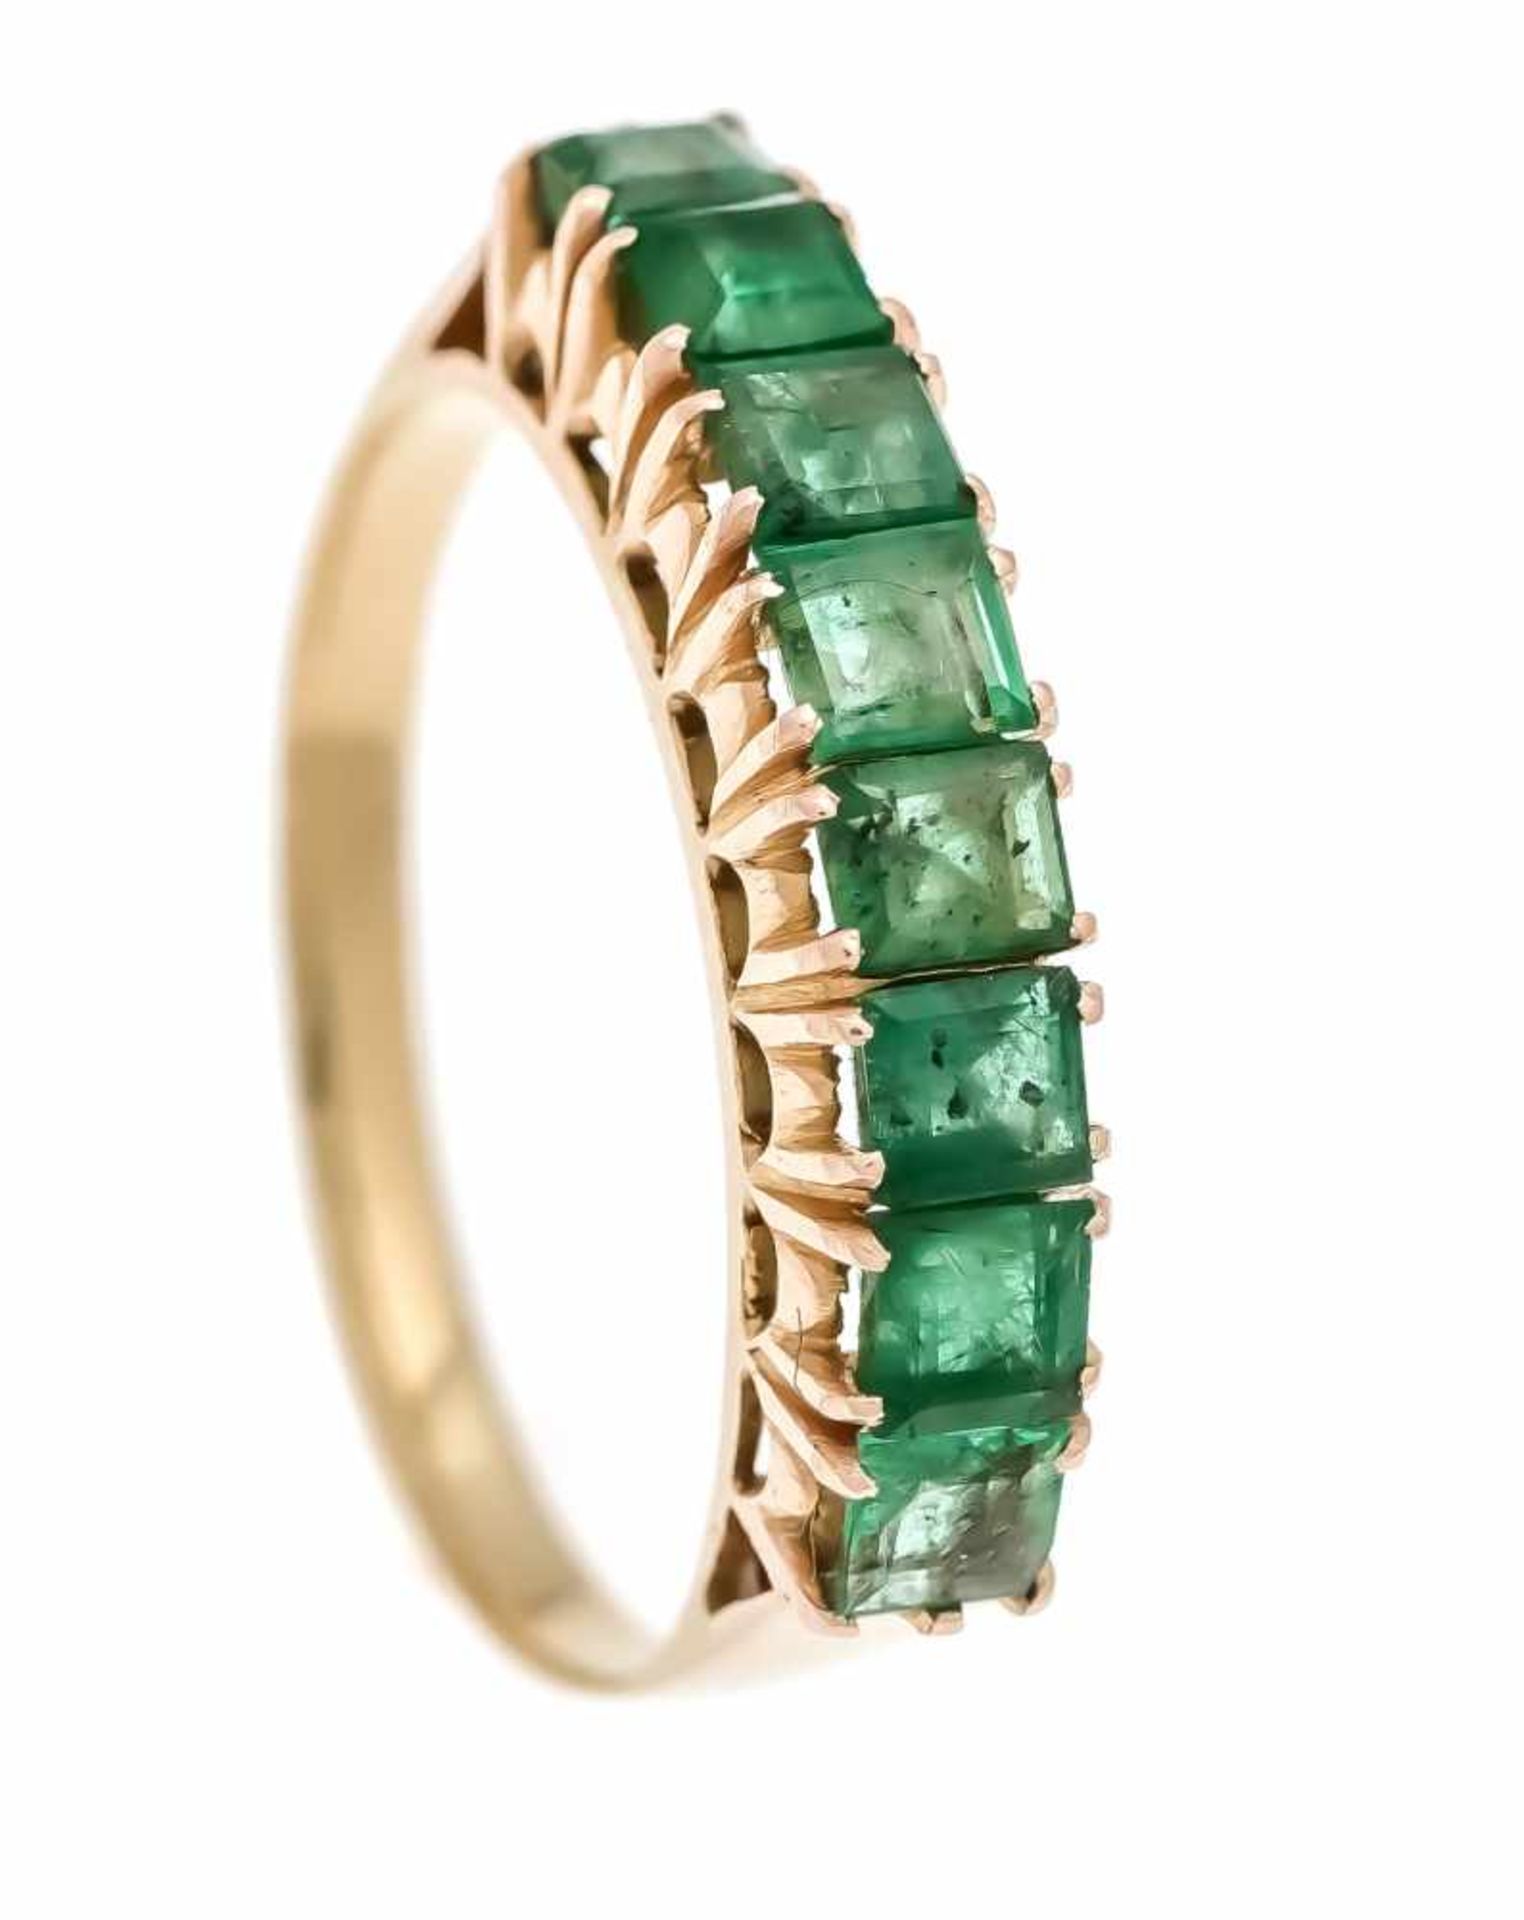 Smaragd-Ring GG 750/000 mit 8 feinen fac. Smaragden in sehr guter Farbe, RG 56, 2,6 gEmerald ring GG